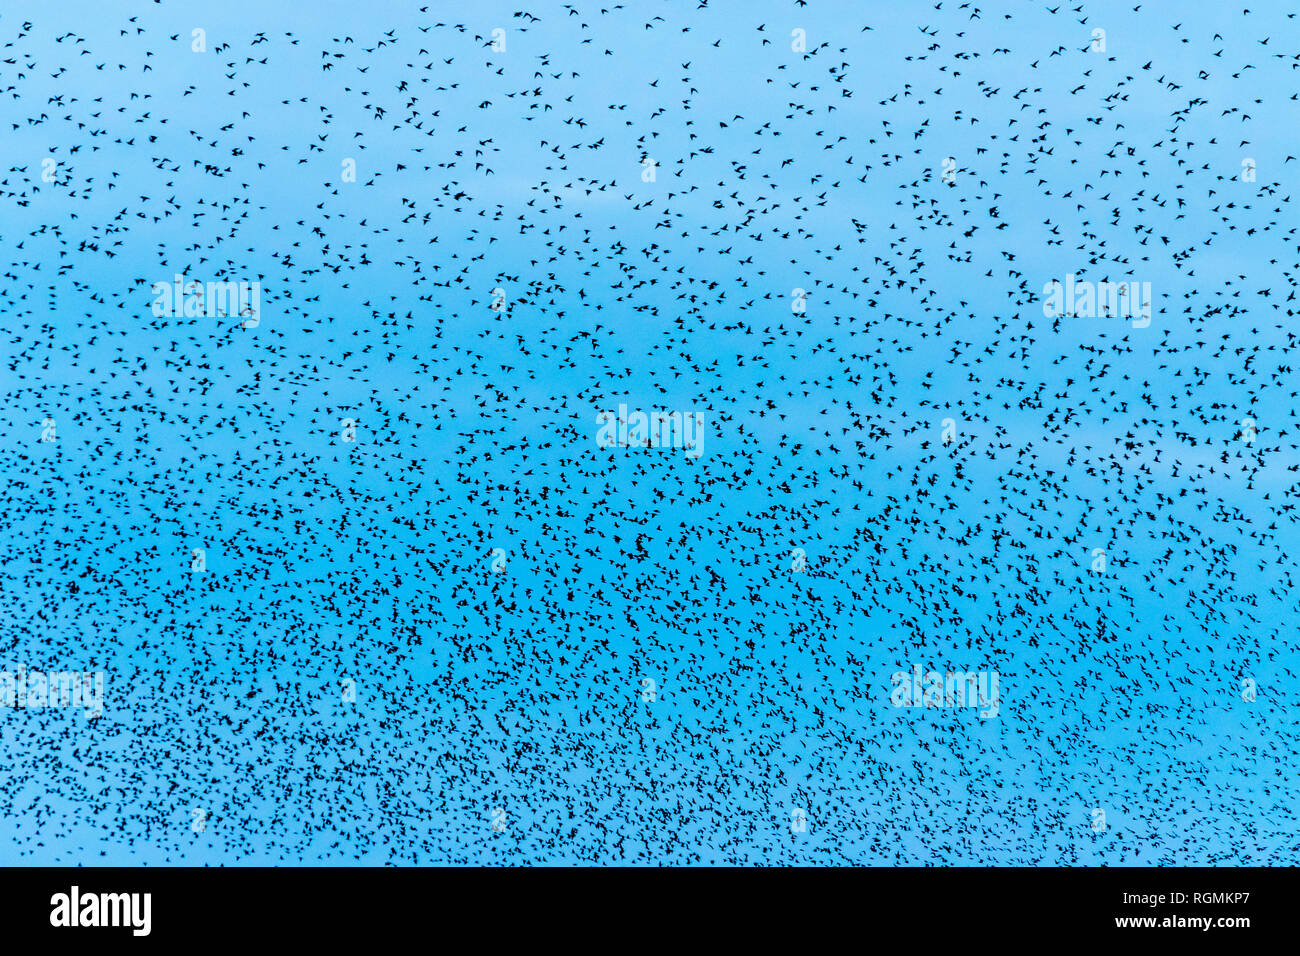 UK, Scotland, Dumfrieshire, flock of Common Starling (Sturnus vulgaris) Stock Photo